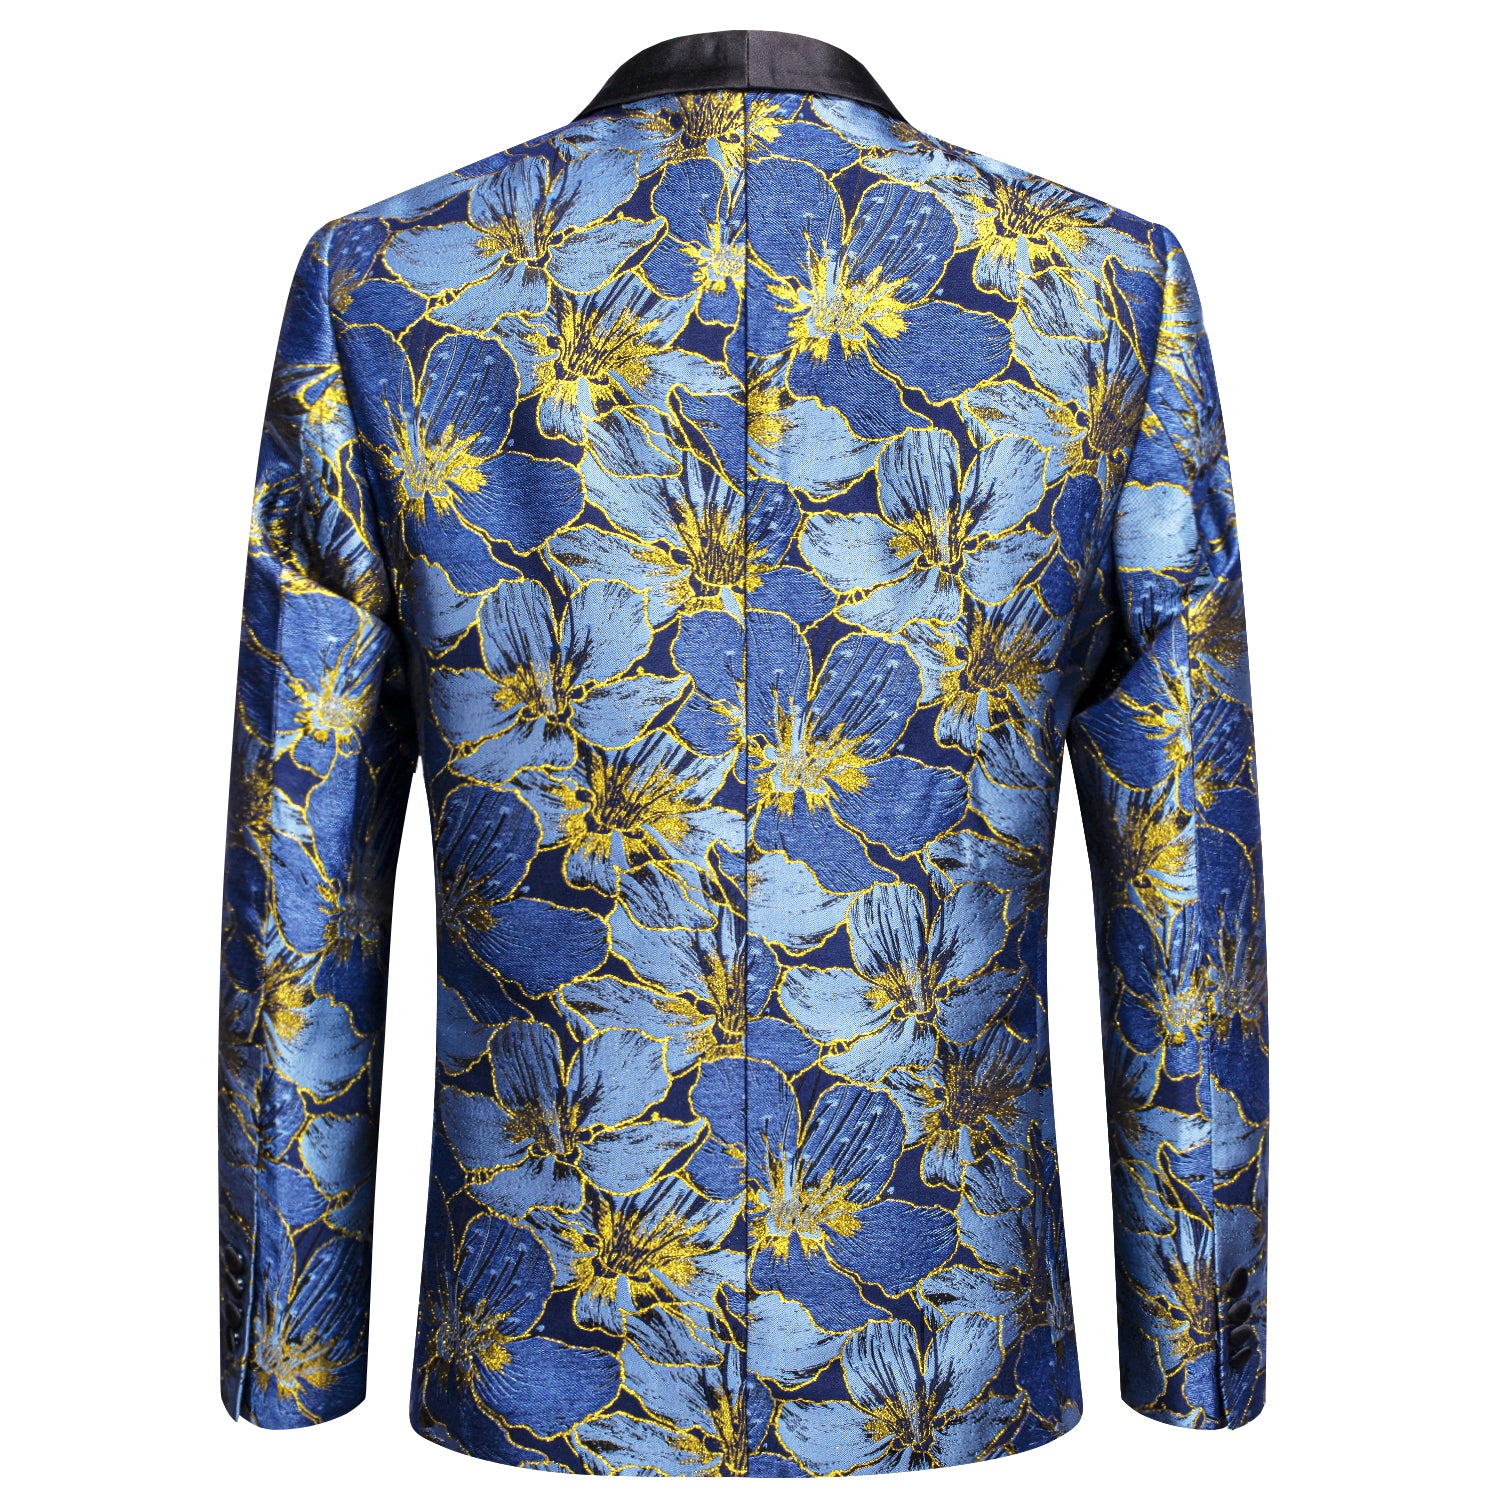 Luxury Blue Golden Floral Men's Suit Set